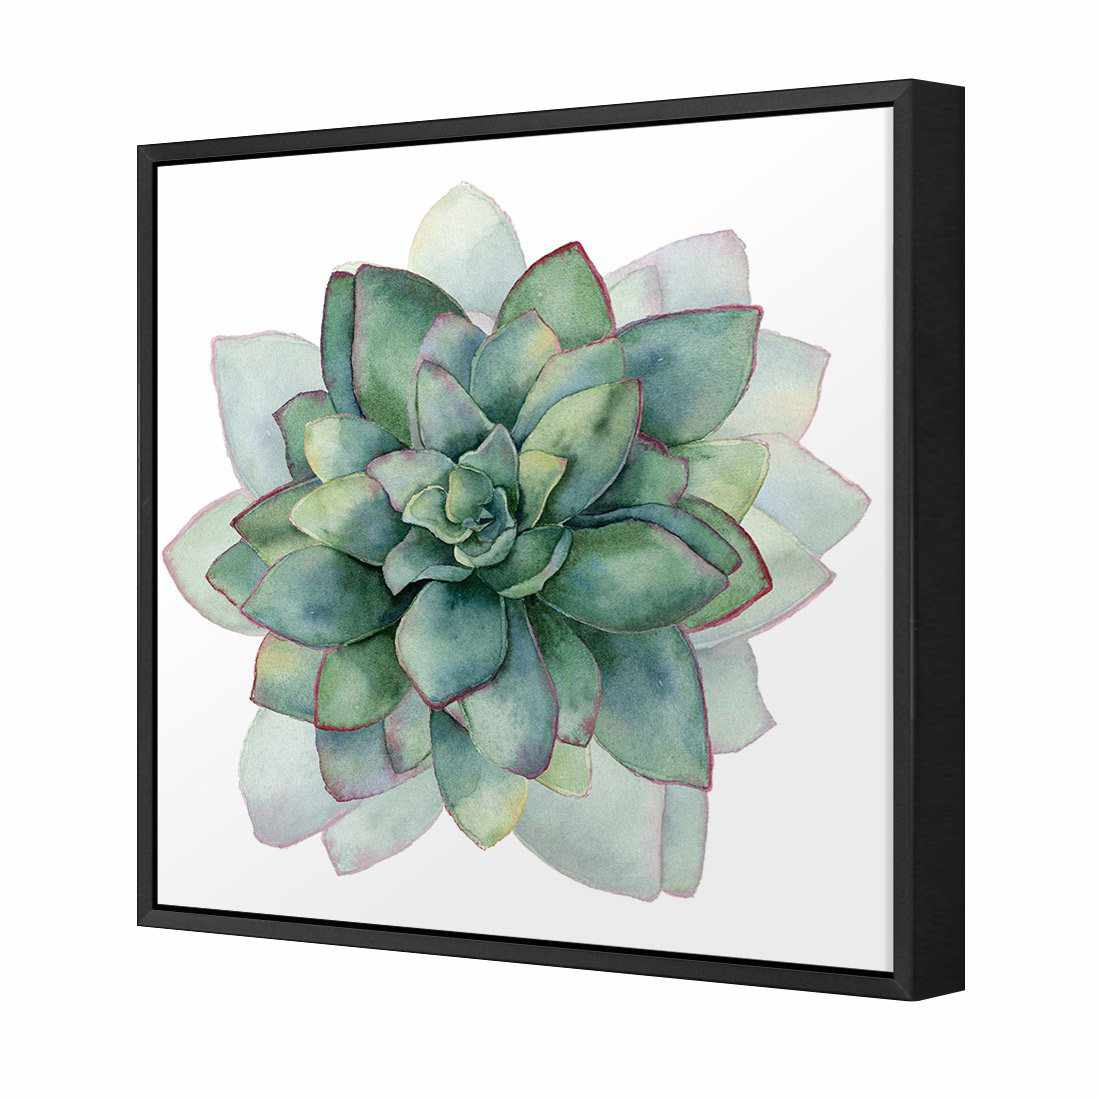 Succulent Spiral Canvas Art-Canvas-Wall Art Designs-30x30cm-Canvas - Black Frame-Wall Art Designs